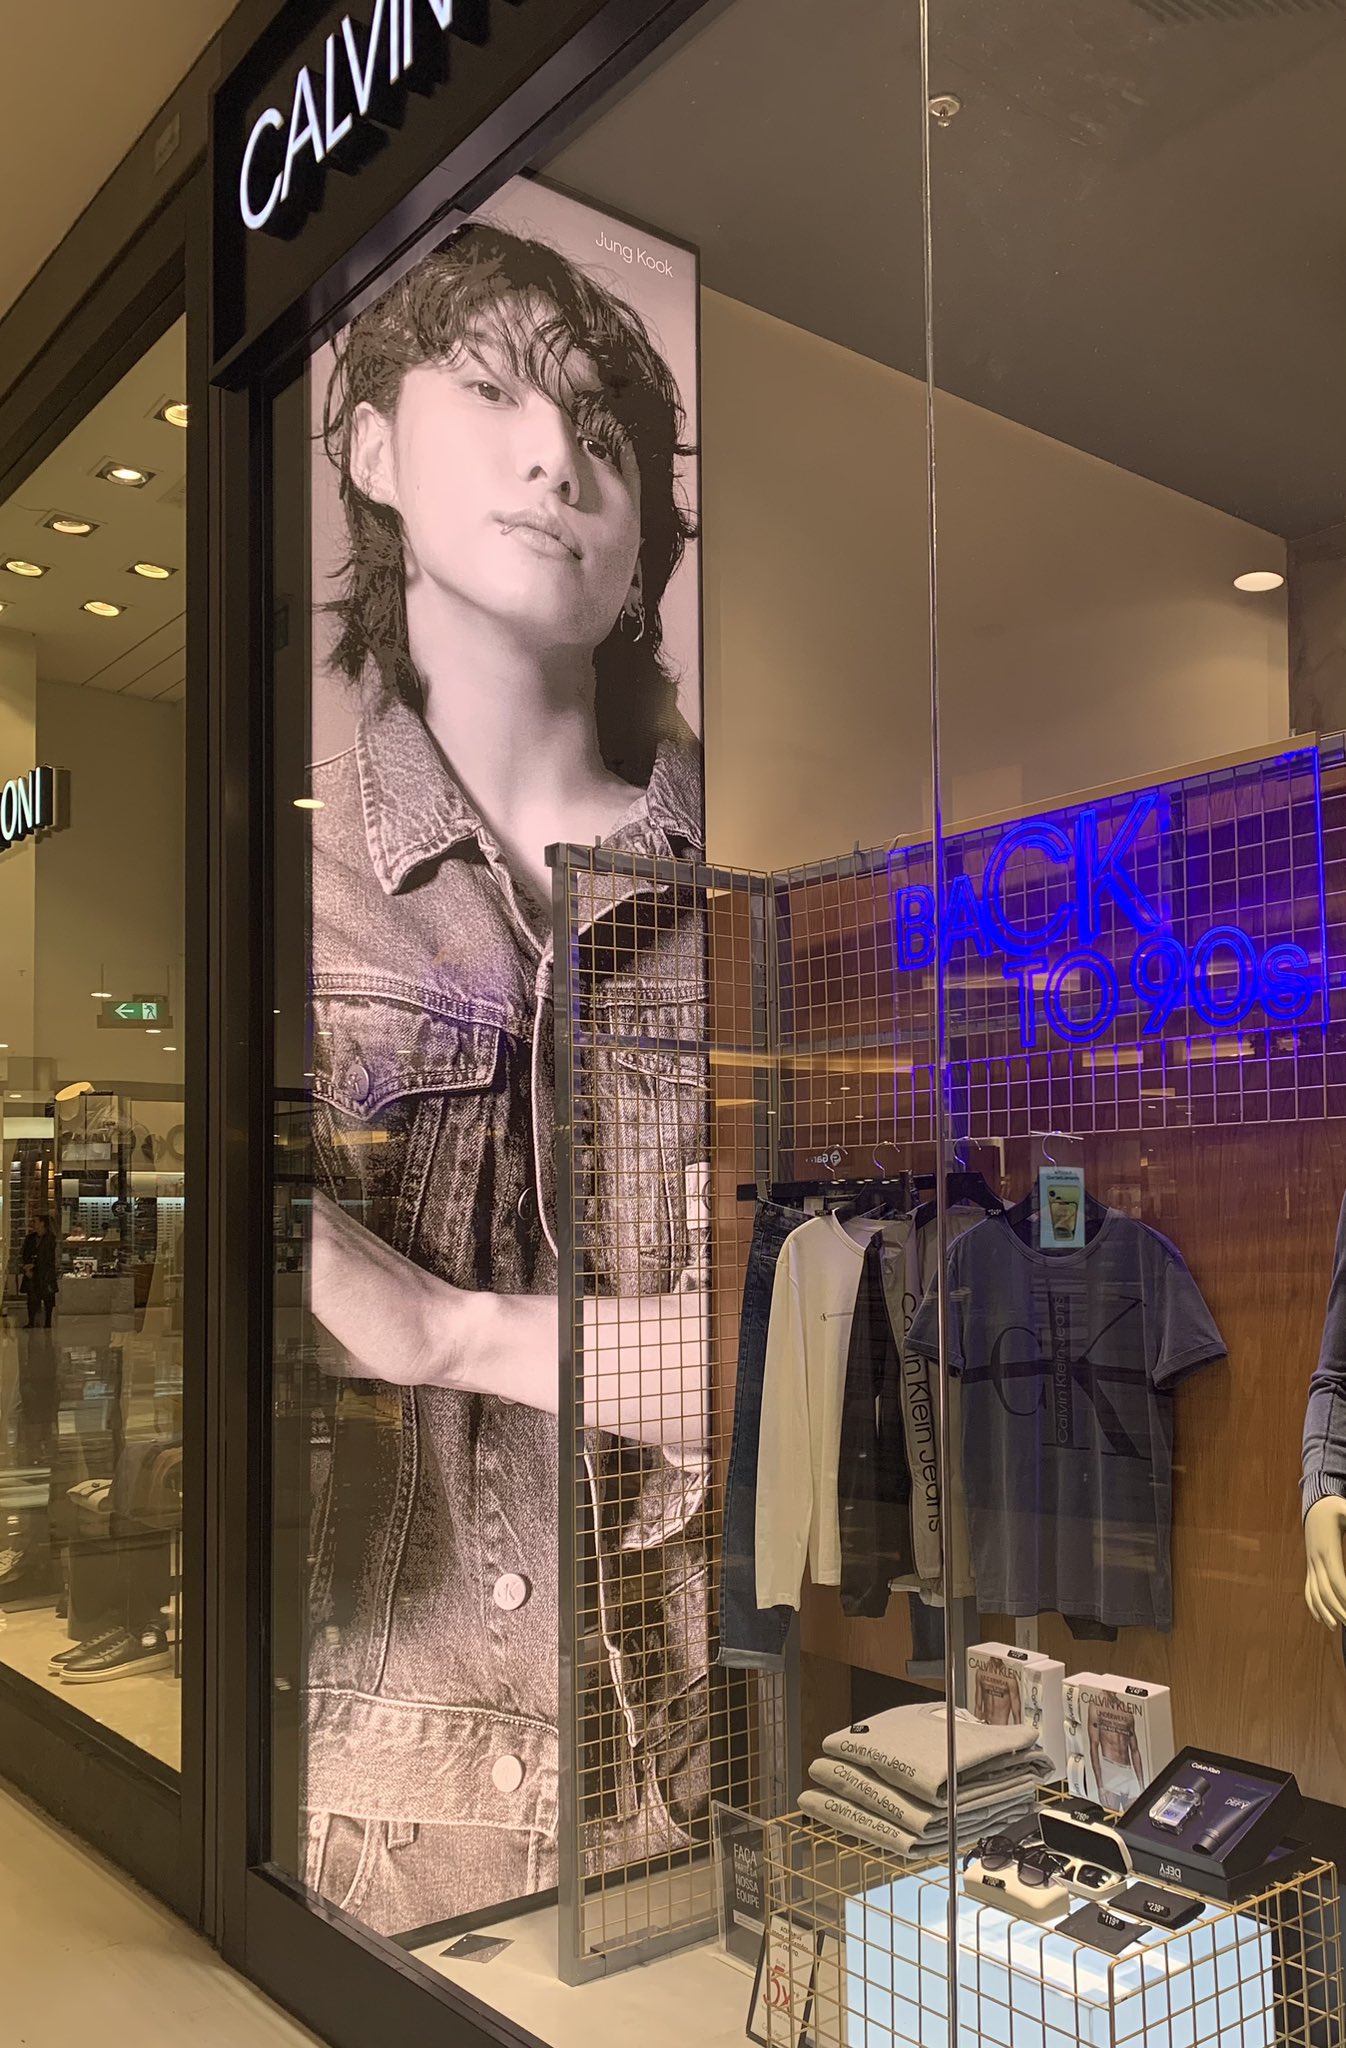 Jeon Jungkook Brazil on X: [📸] Anúncio de Jungkook para a Calvin Klein em  loja da marca no Barra Shopping Sul, em Porto Alegre, no Rio Grande do Sul  🇧🇷 #JUNGKOOKxCALVINKLEIN  /